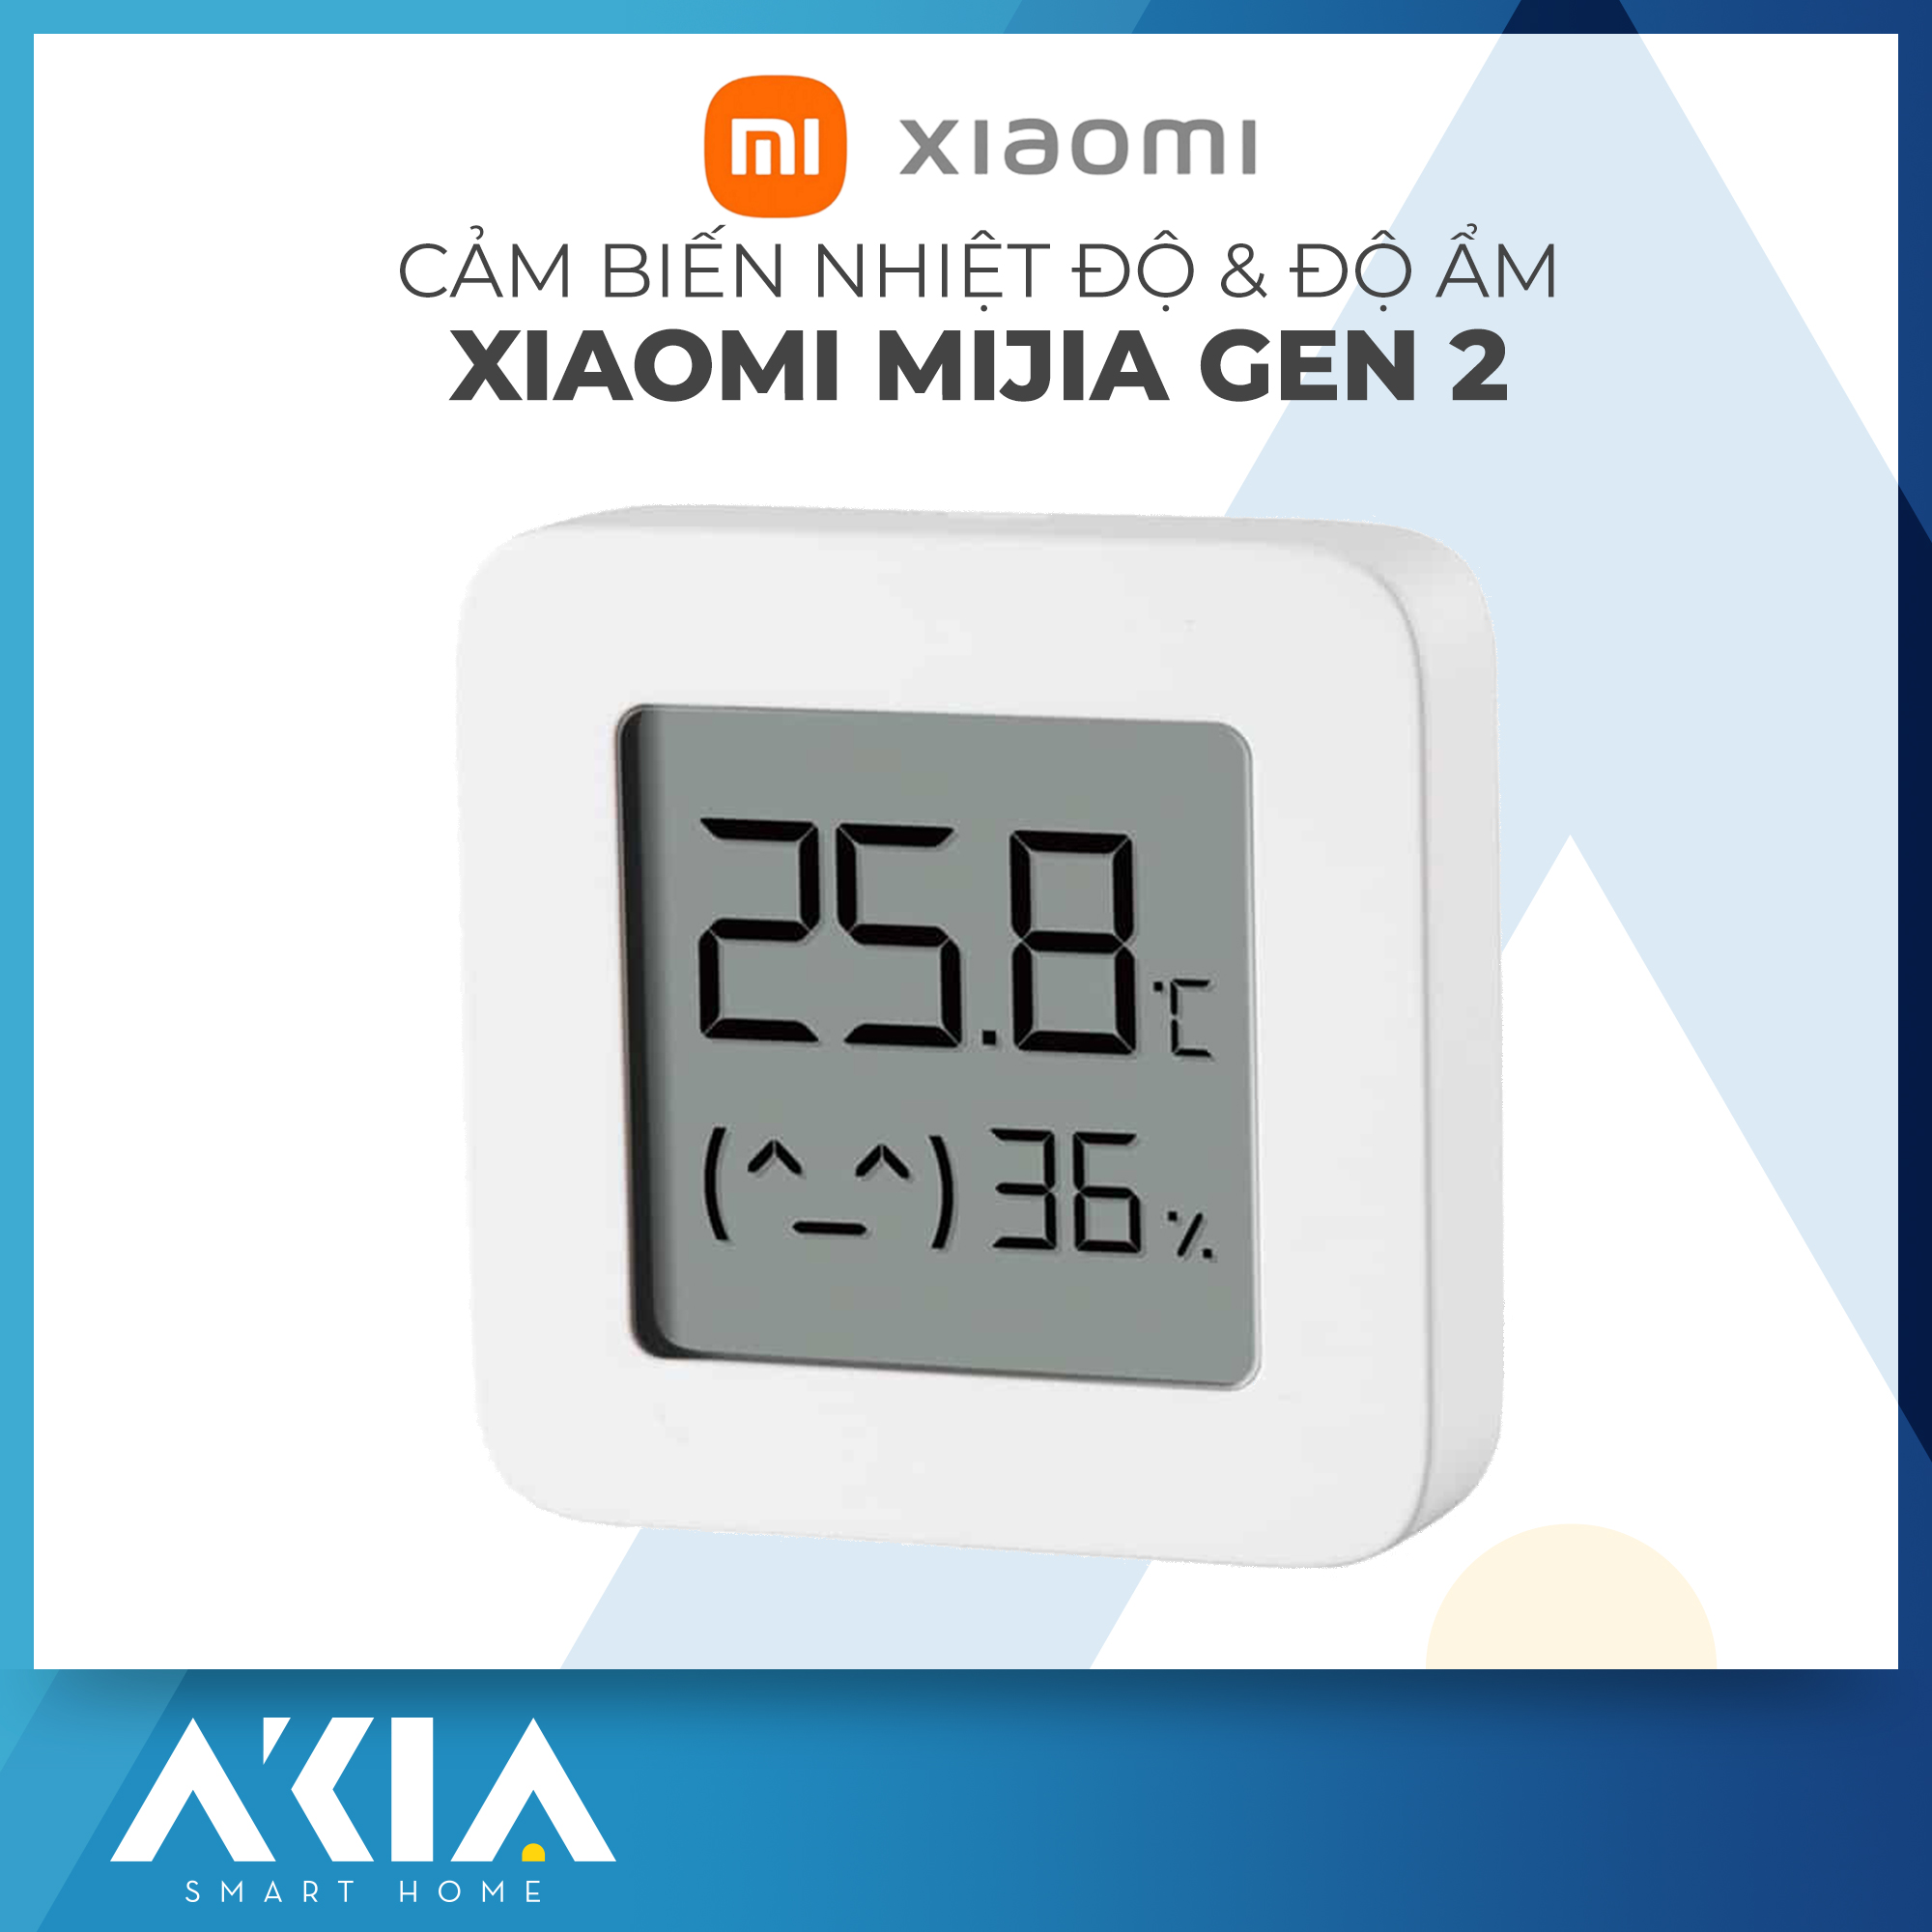 Nhiệt ẩm kế điện tử Xiaomi Gen 2 LYWSD03MMC - Có màn hình LCD